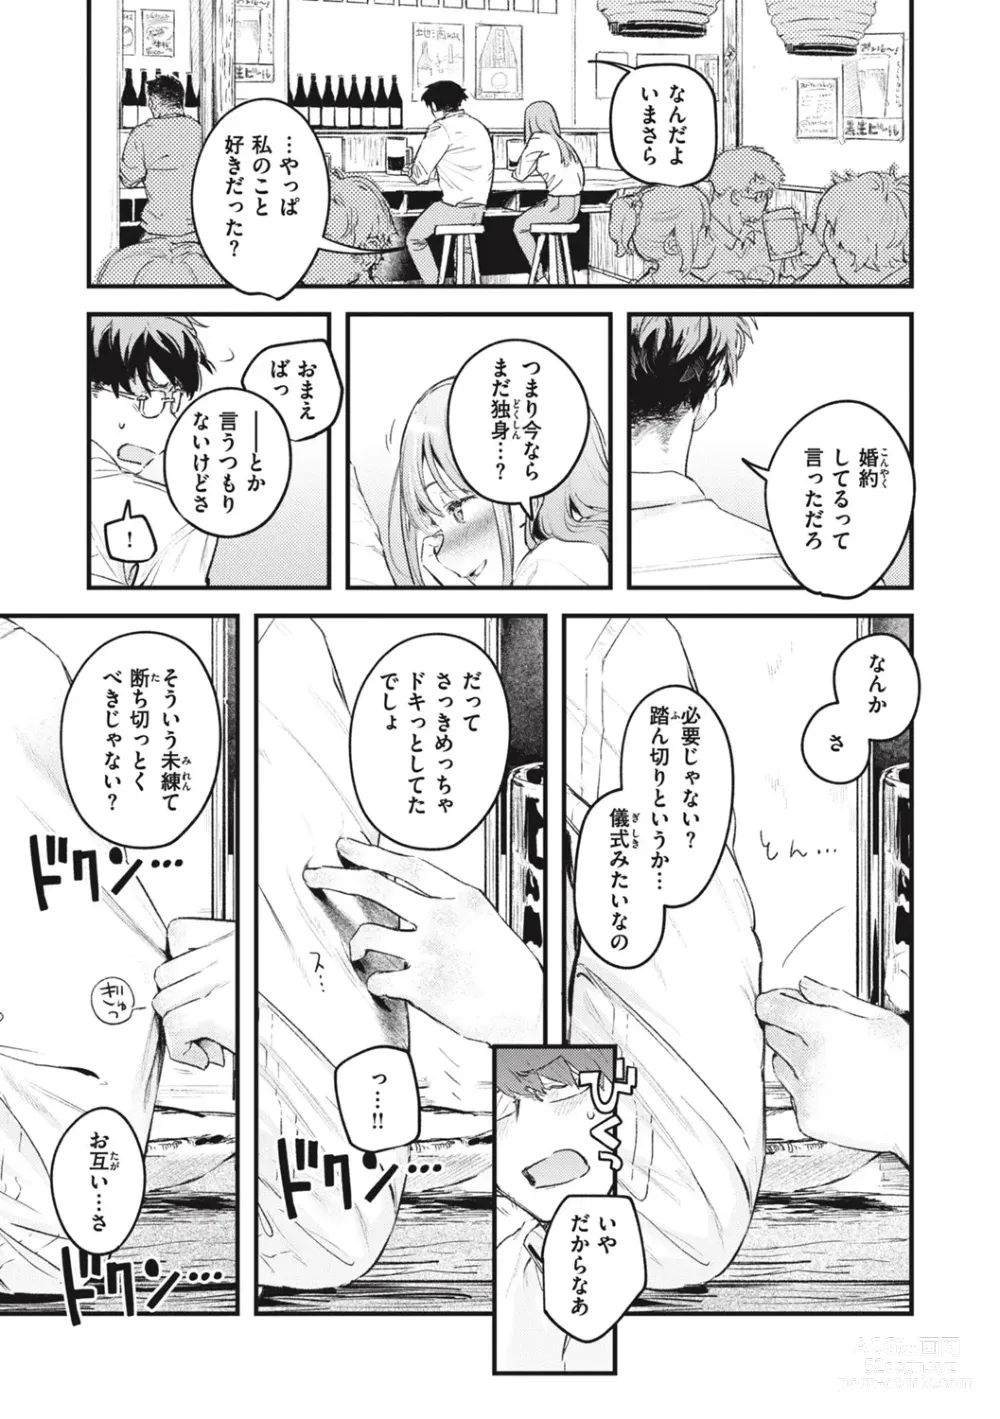 Page 193 of manga Koi no Mukidashi